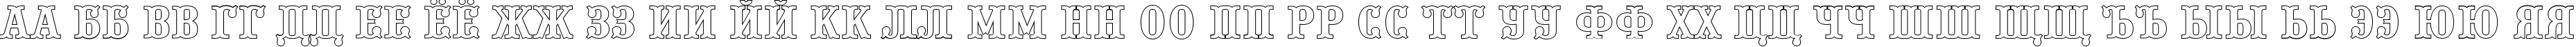 Пример написания русского алфавита шрифтом a_PresentumOtl